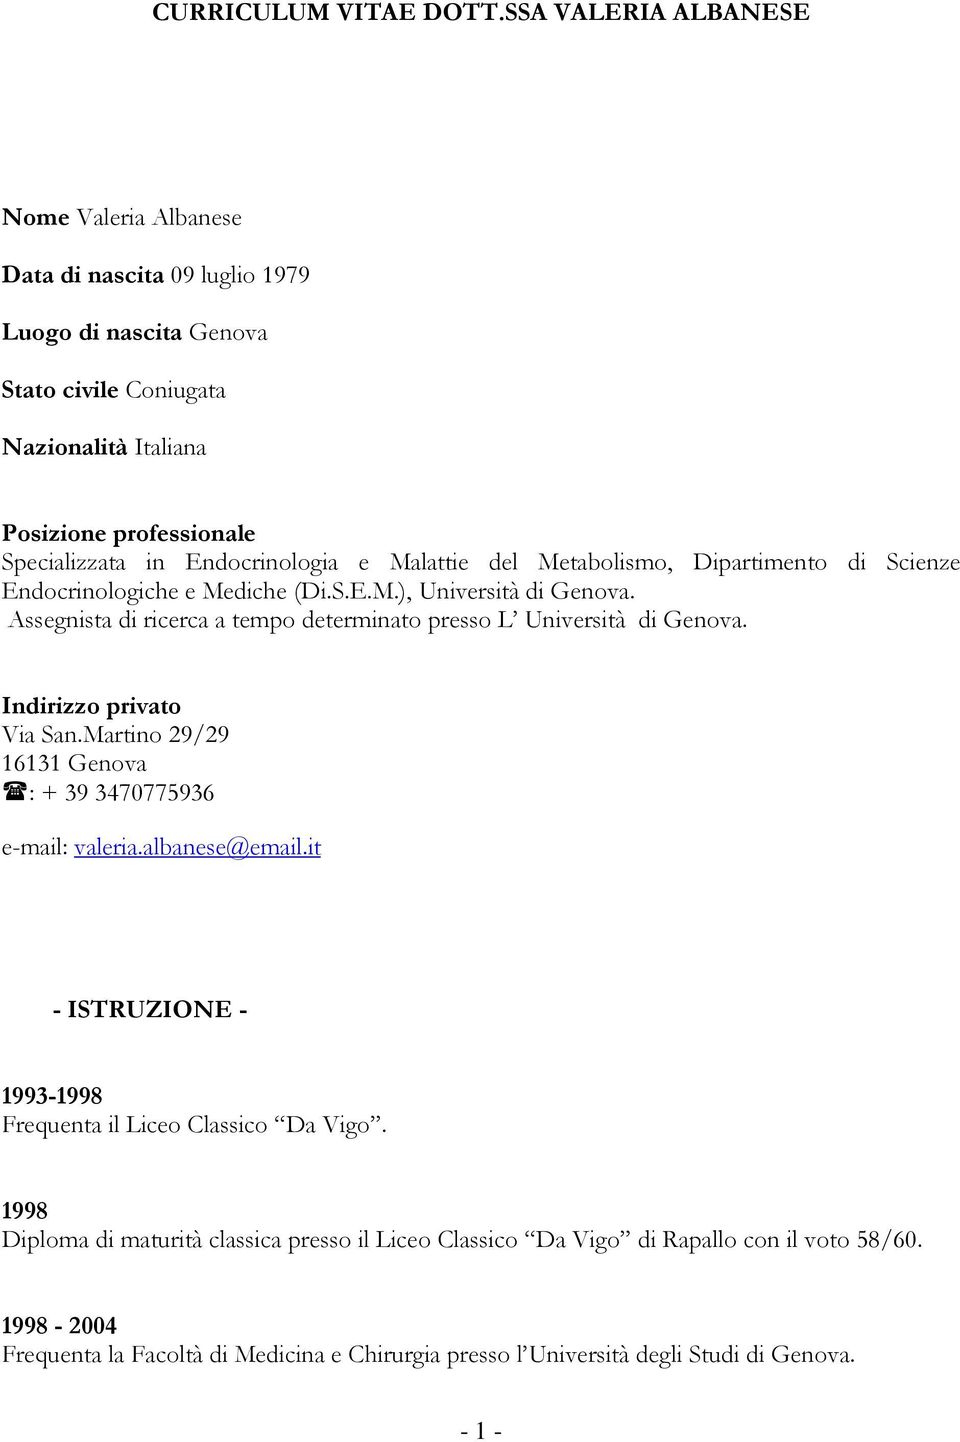 Endocrinologia e Malattie del Metabolismo, Dipartimento di Scienze Endocrinologiche e Mediche (Di.S.E.M.), Università di Genova.